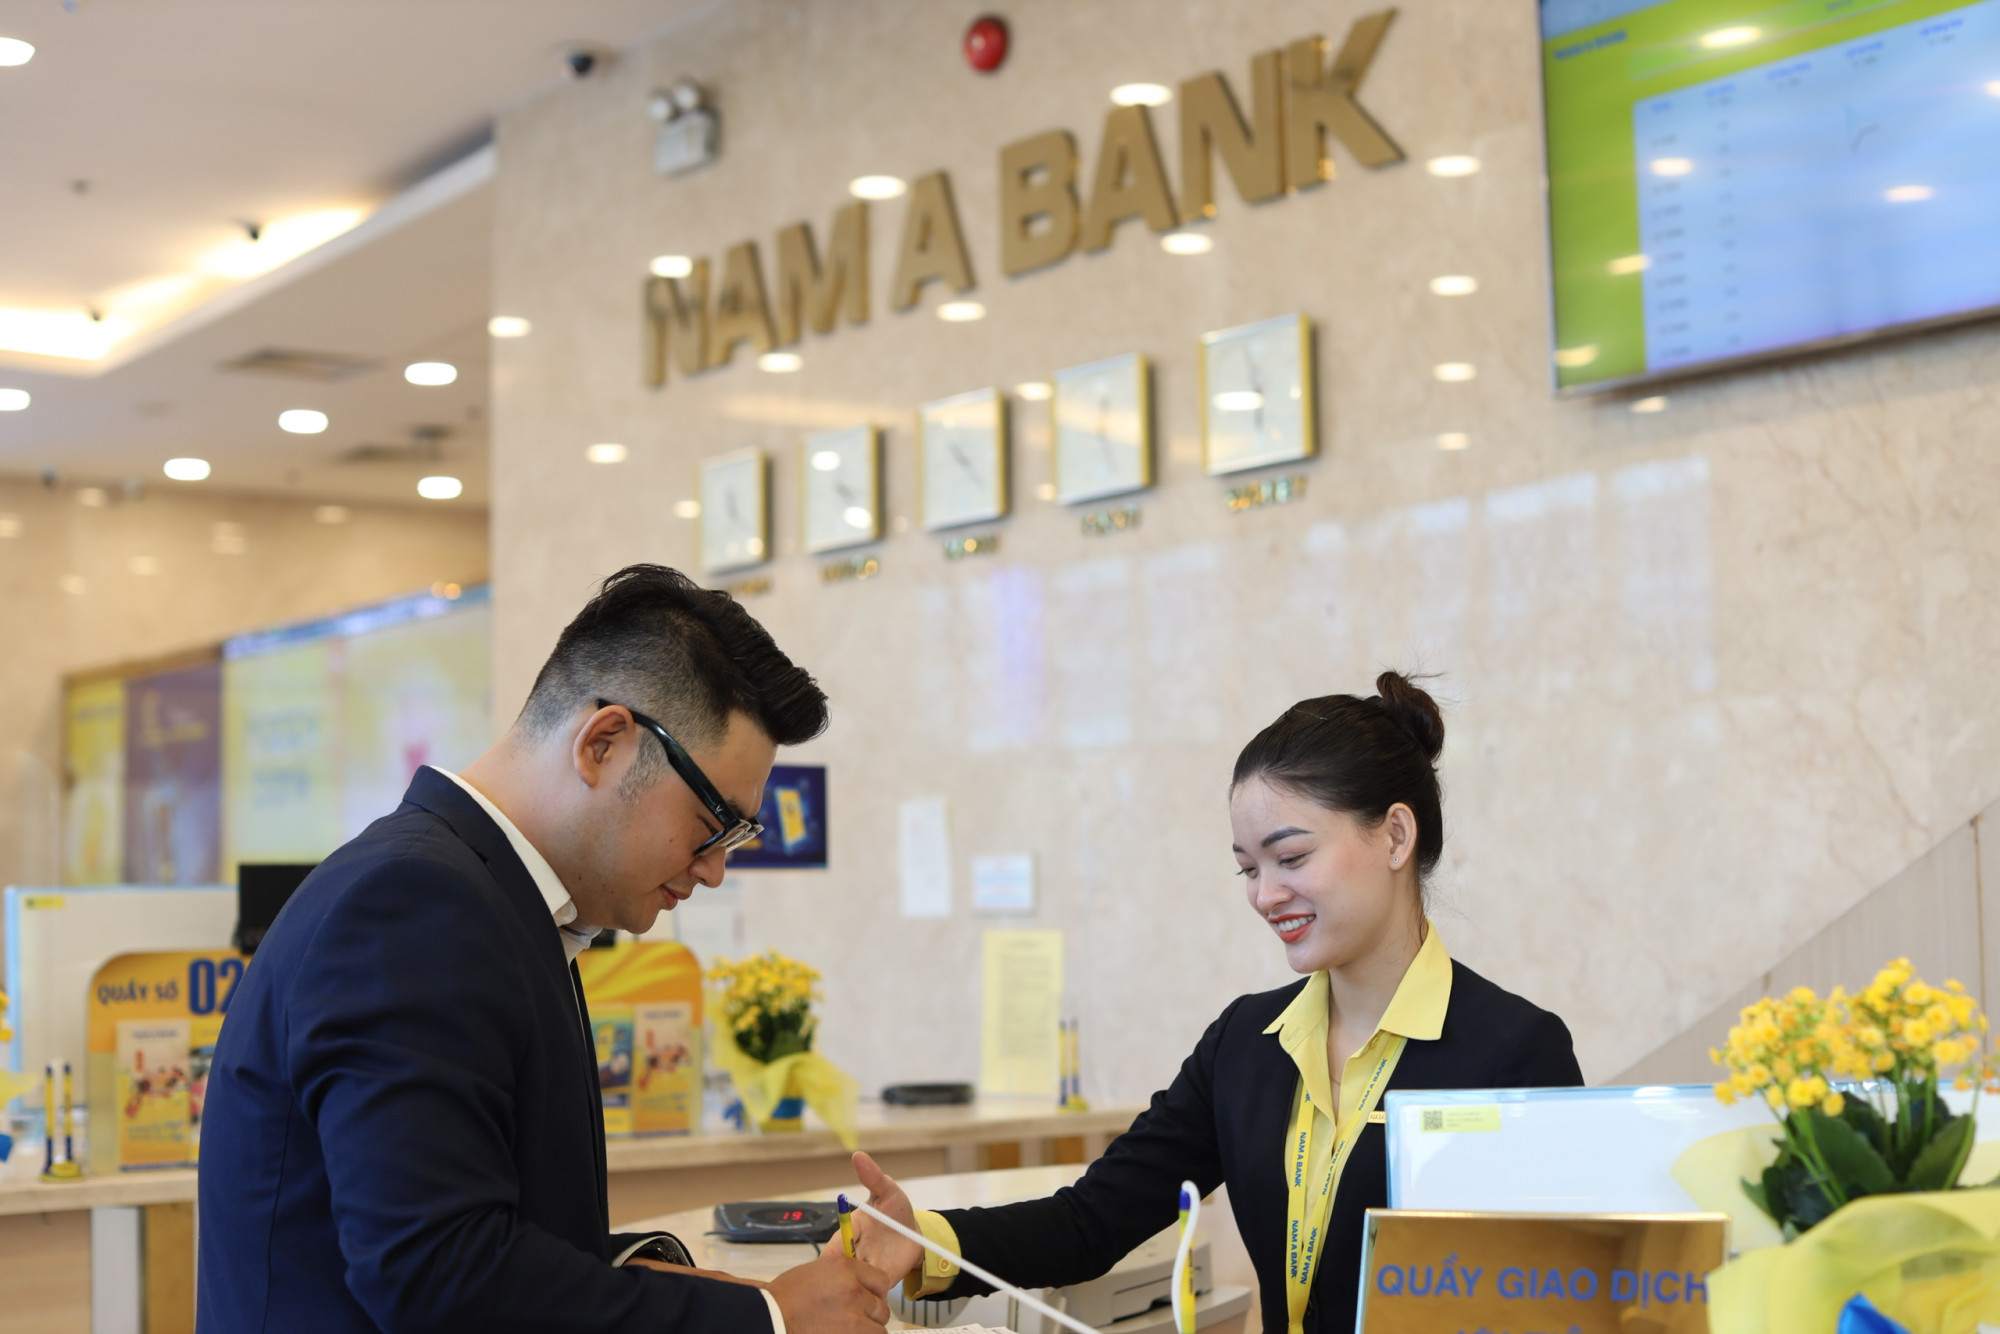 Nam A Bank đã đạt cấp độ 3 của ngân hàng xanh - Ảnh: Nam A Bank